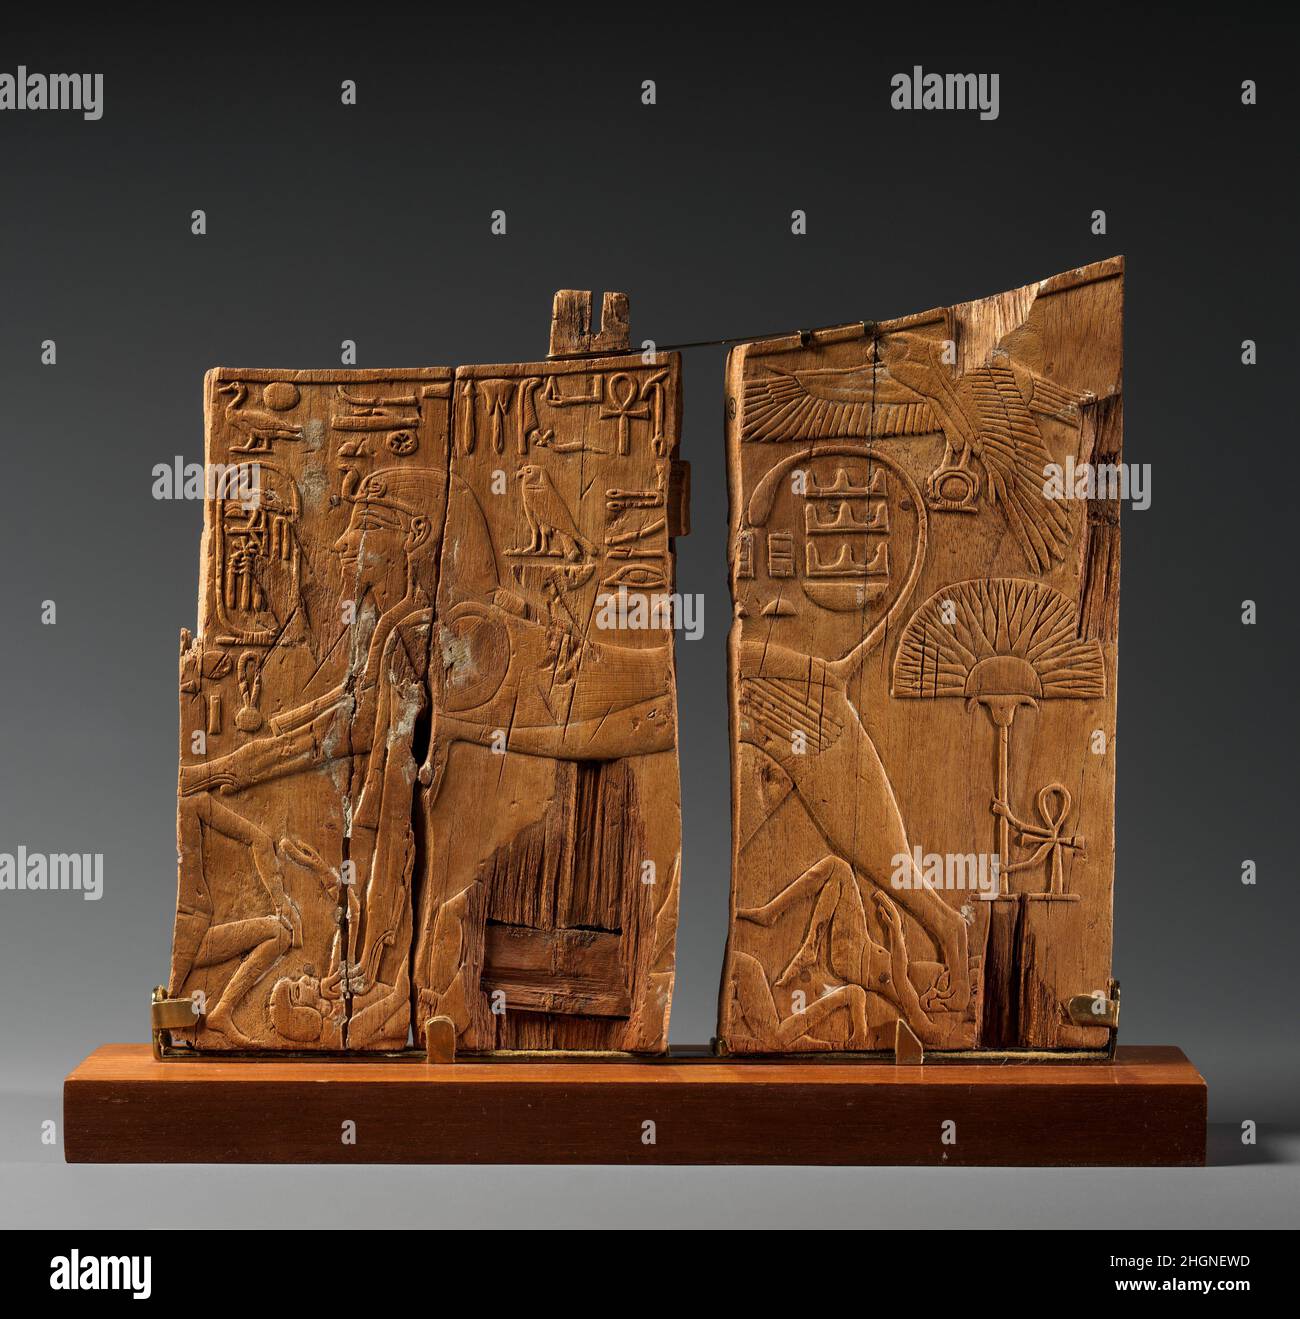 Panel de Brazo de una Cátedra Ceremonial de Thutmosis IV ca. 1400–1390 A.C. Imperio Nuevo Este panel de madera es parte del brazo izquierdo de un trono que pertenecía al faraón Thutmosis IV Los rastros de pegamento en la superficie sugieren que el bajo relieve, con sus detalles exquisitamente tallados, fue una vez cubierto con papel de aluminio dorado. Por un lado, el rey se muestra como una esfinge de pie que sojuzga a los enemigos de Egipto. El halcón en la parte superior derecha representa al dios Horus que es identificado como 'el gran dios, con plumaje endulzado, dando vida y dominio'. El texto sobre la espalda de la esfinge dice: 'Horus, el señor de la fuerza y a. Foto de stock